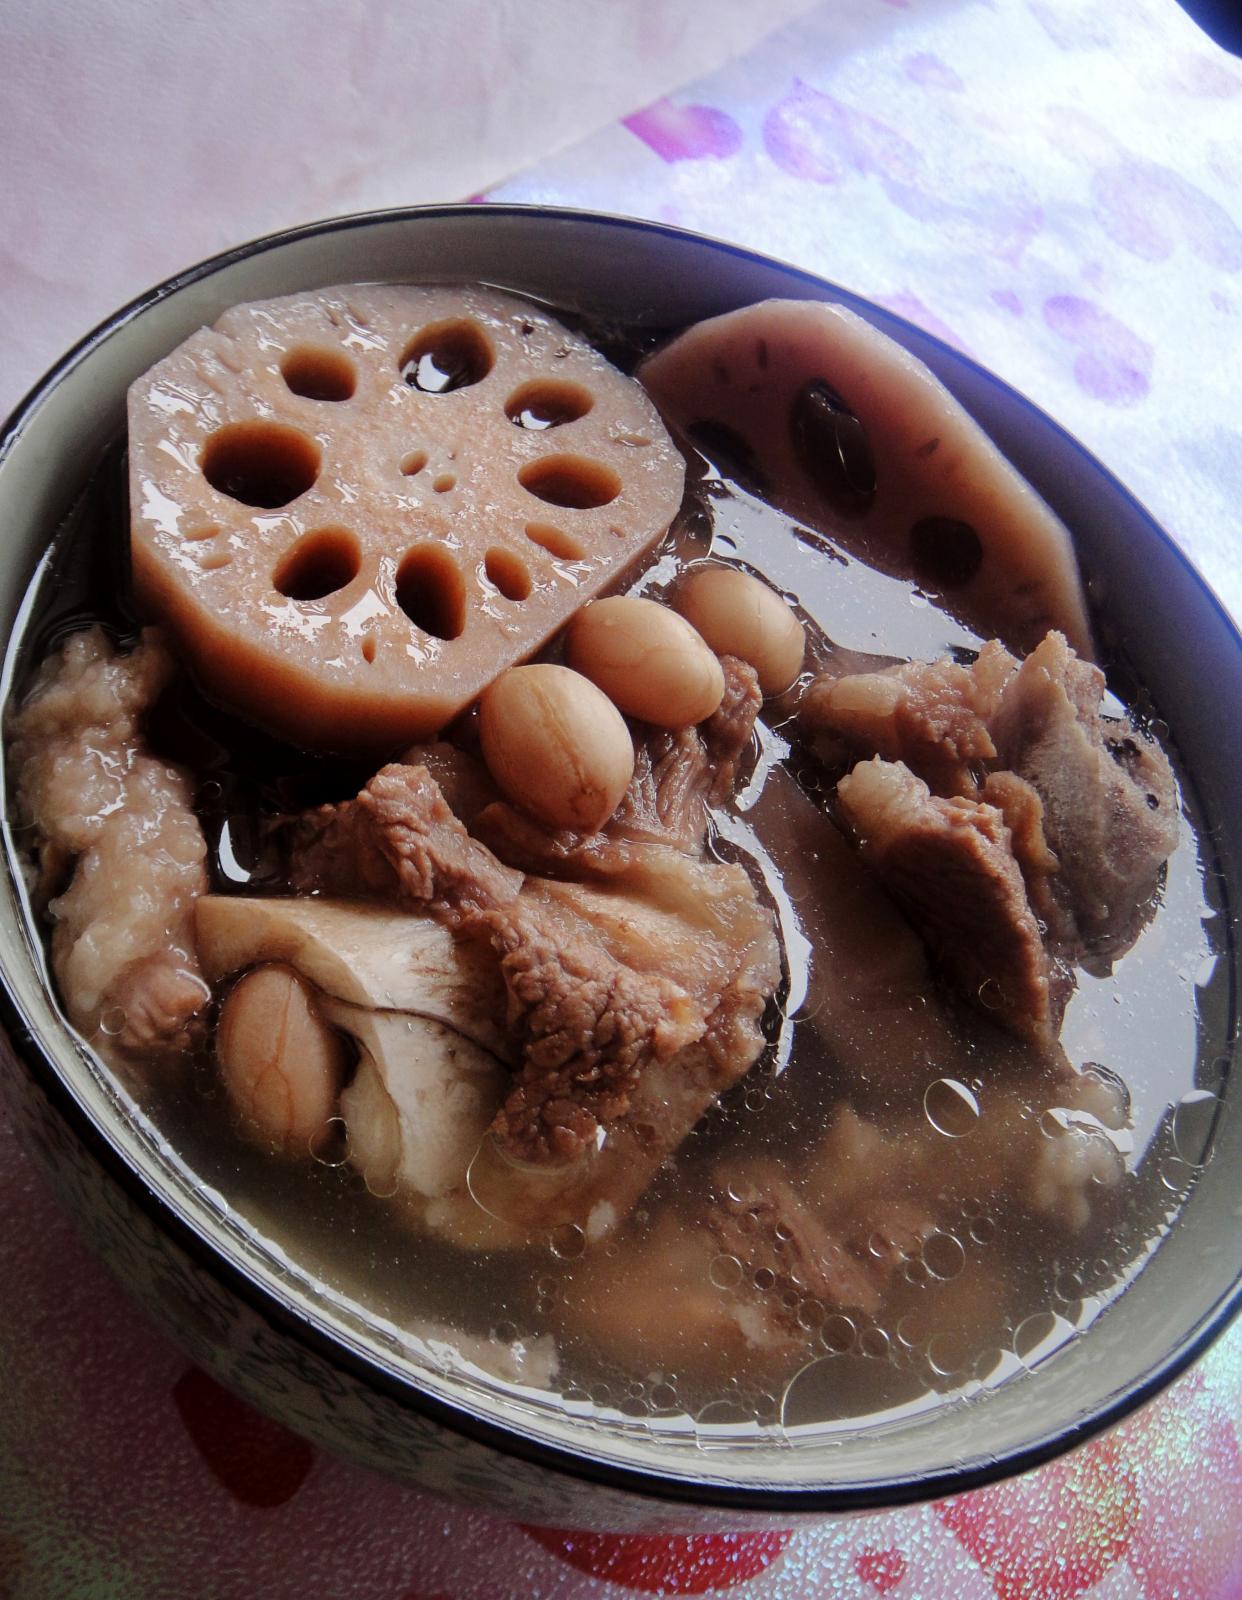 WSM @ Kitchen: 五香花生焖排骨 Braised peanut stew pork ribs